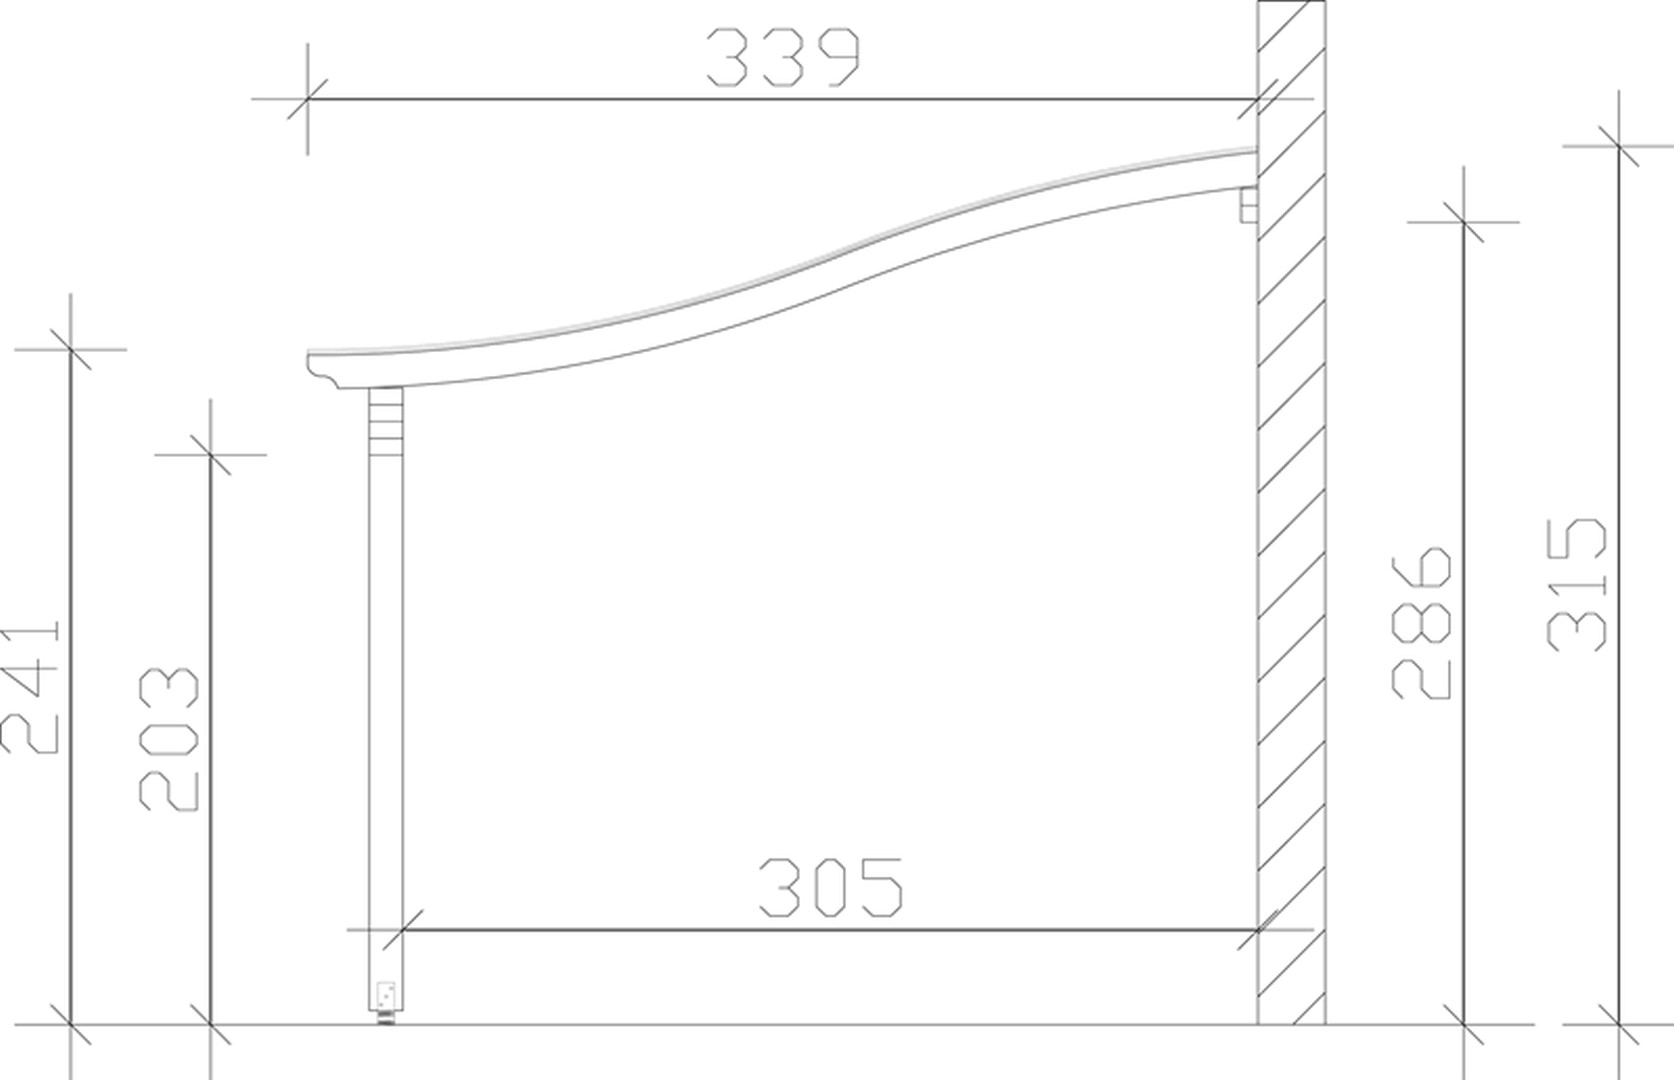 Skan Holz Terrassenüberdachung Verona 434 x 339 cm, Leimholz, Doppelstegplatten